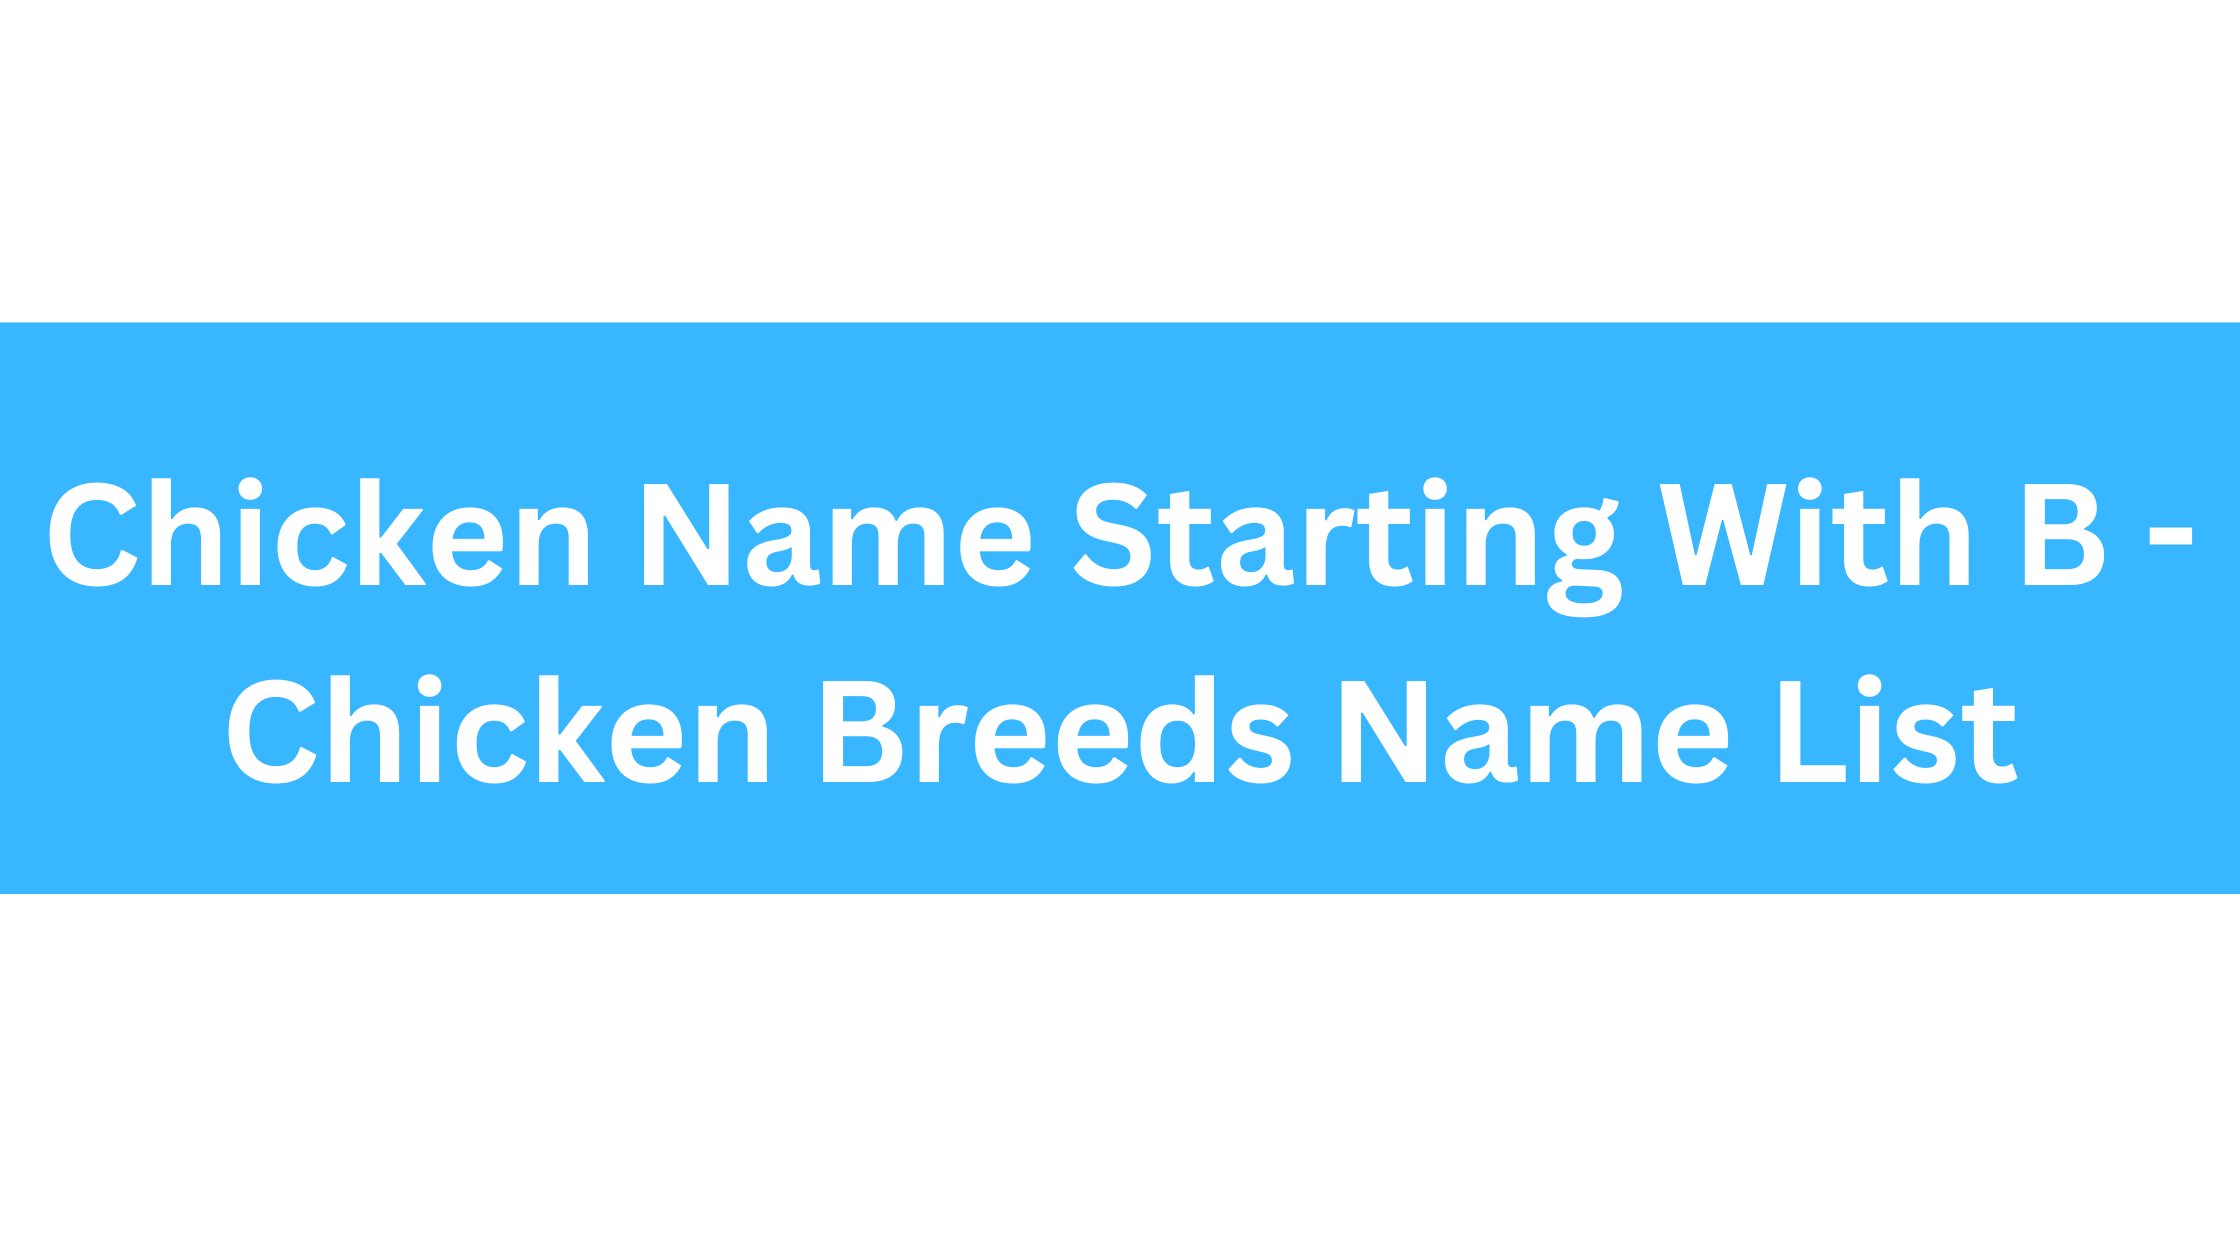 Chicken Breeds That Start With B